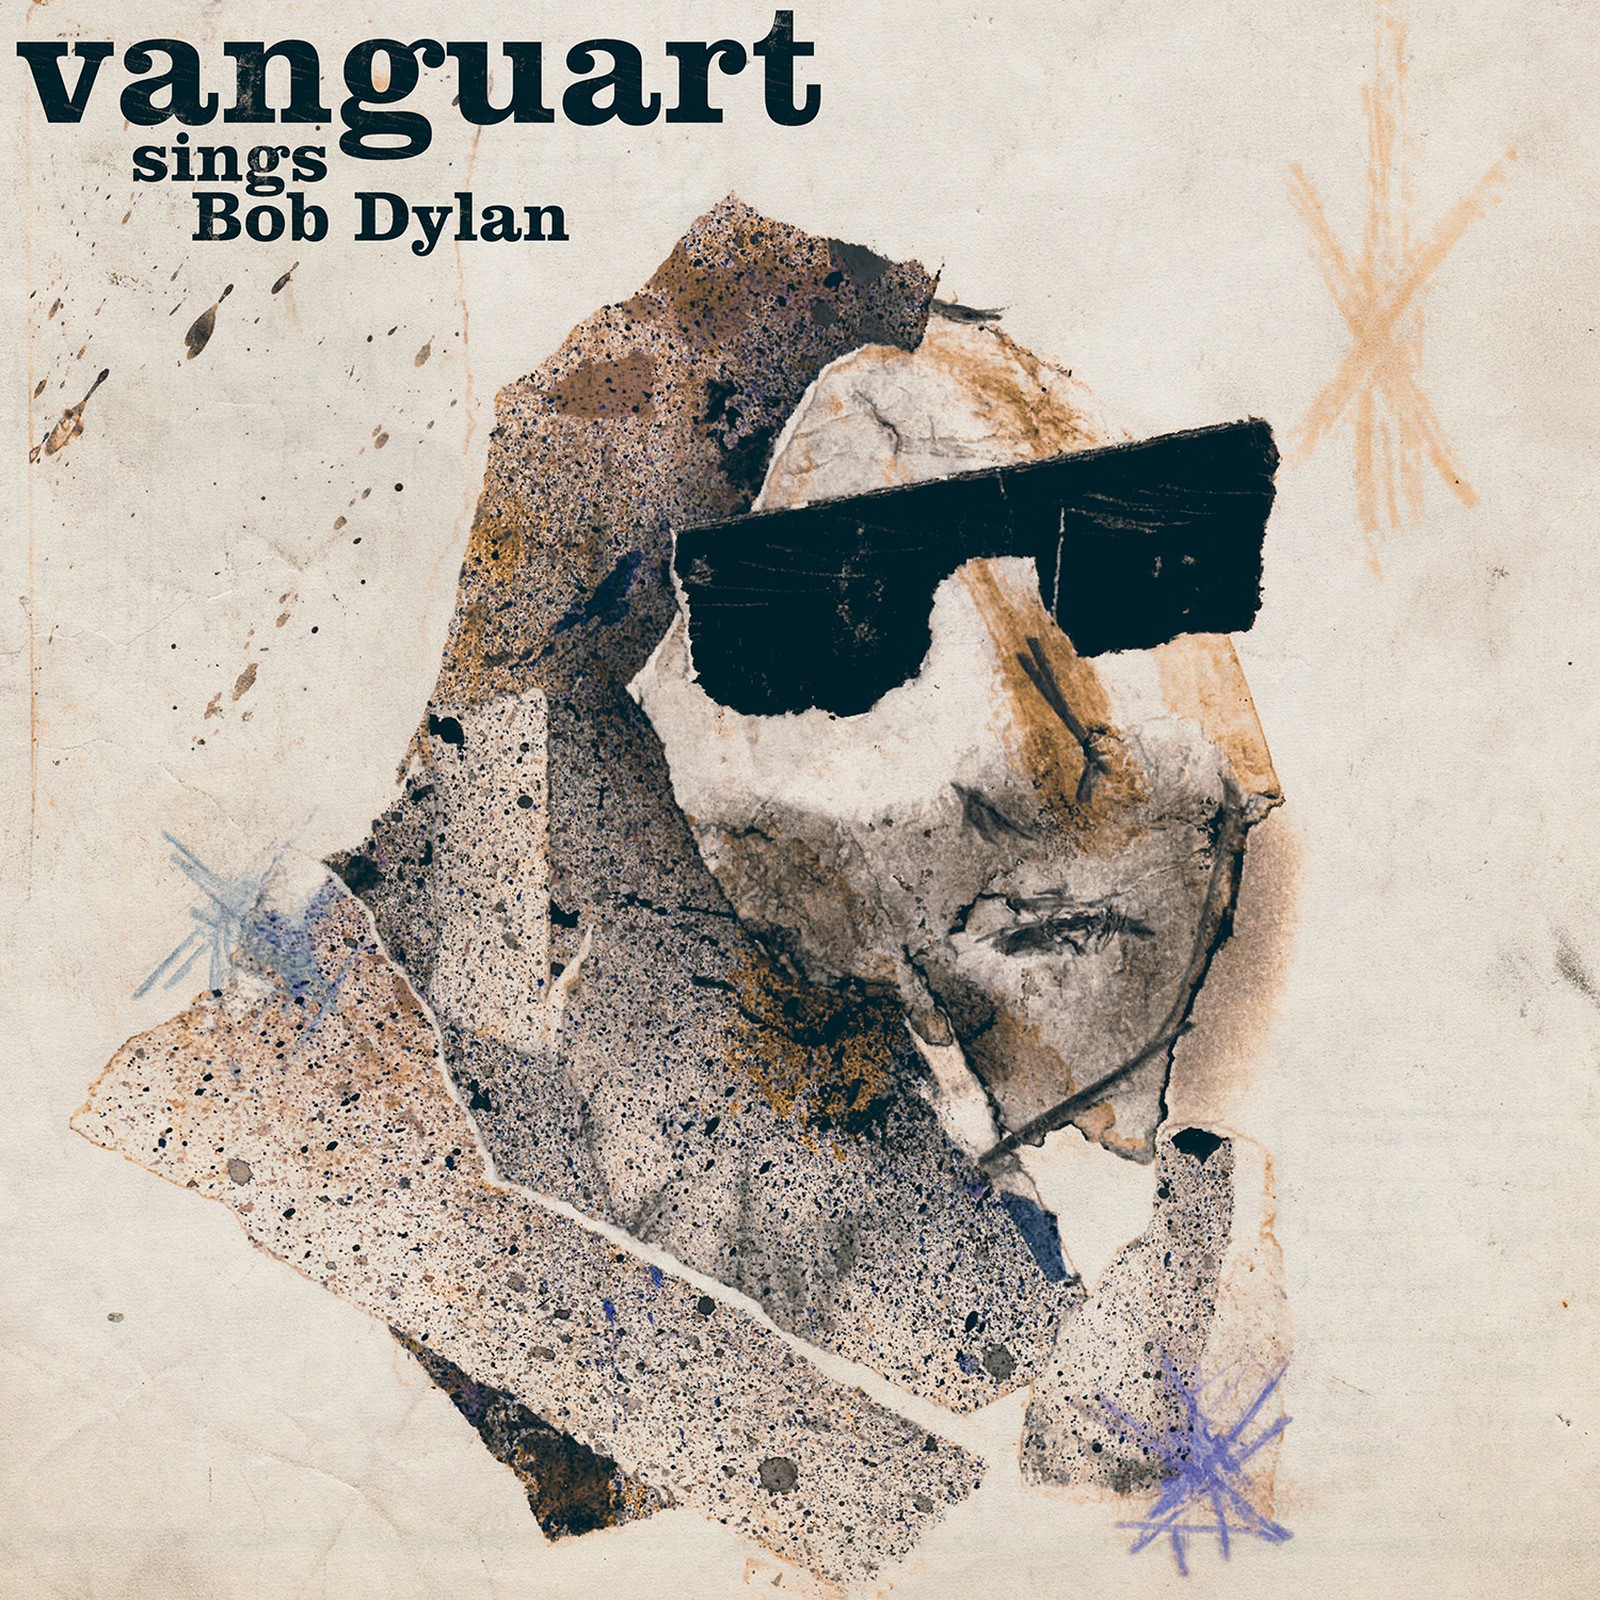 Exclusivo | Vanguart lança disco com releituras de Bob Dylan: "queríamos algo afetivo para quem ouvisse"